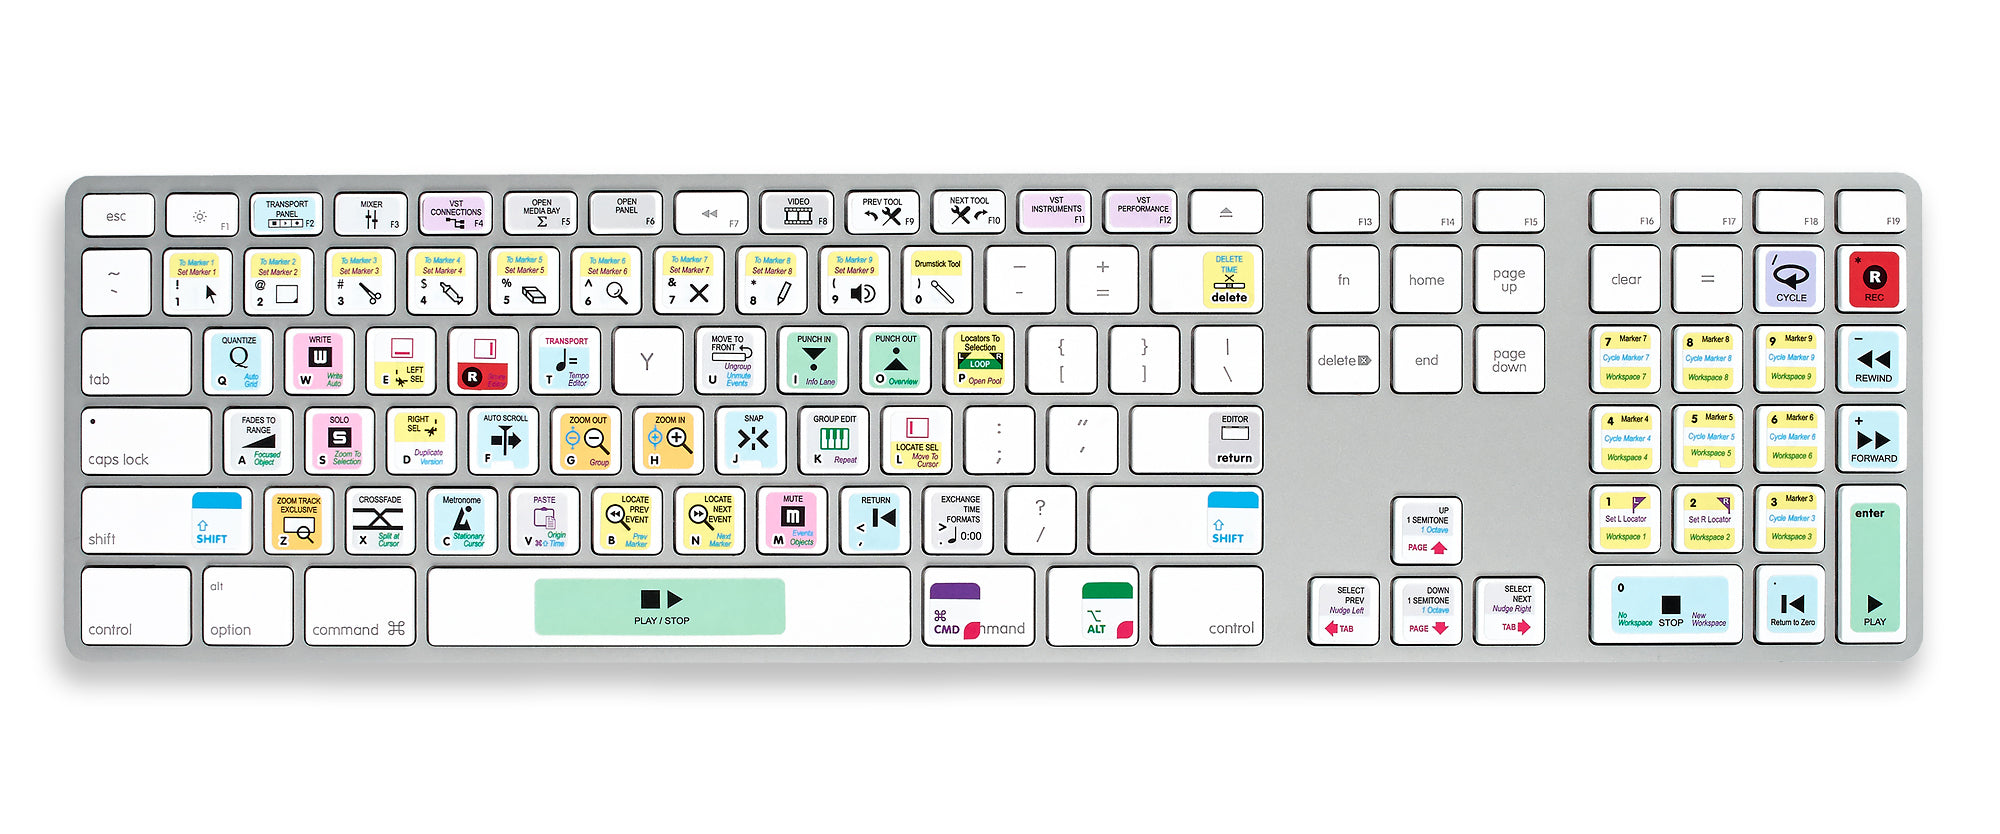 cubase keyboard